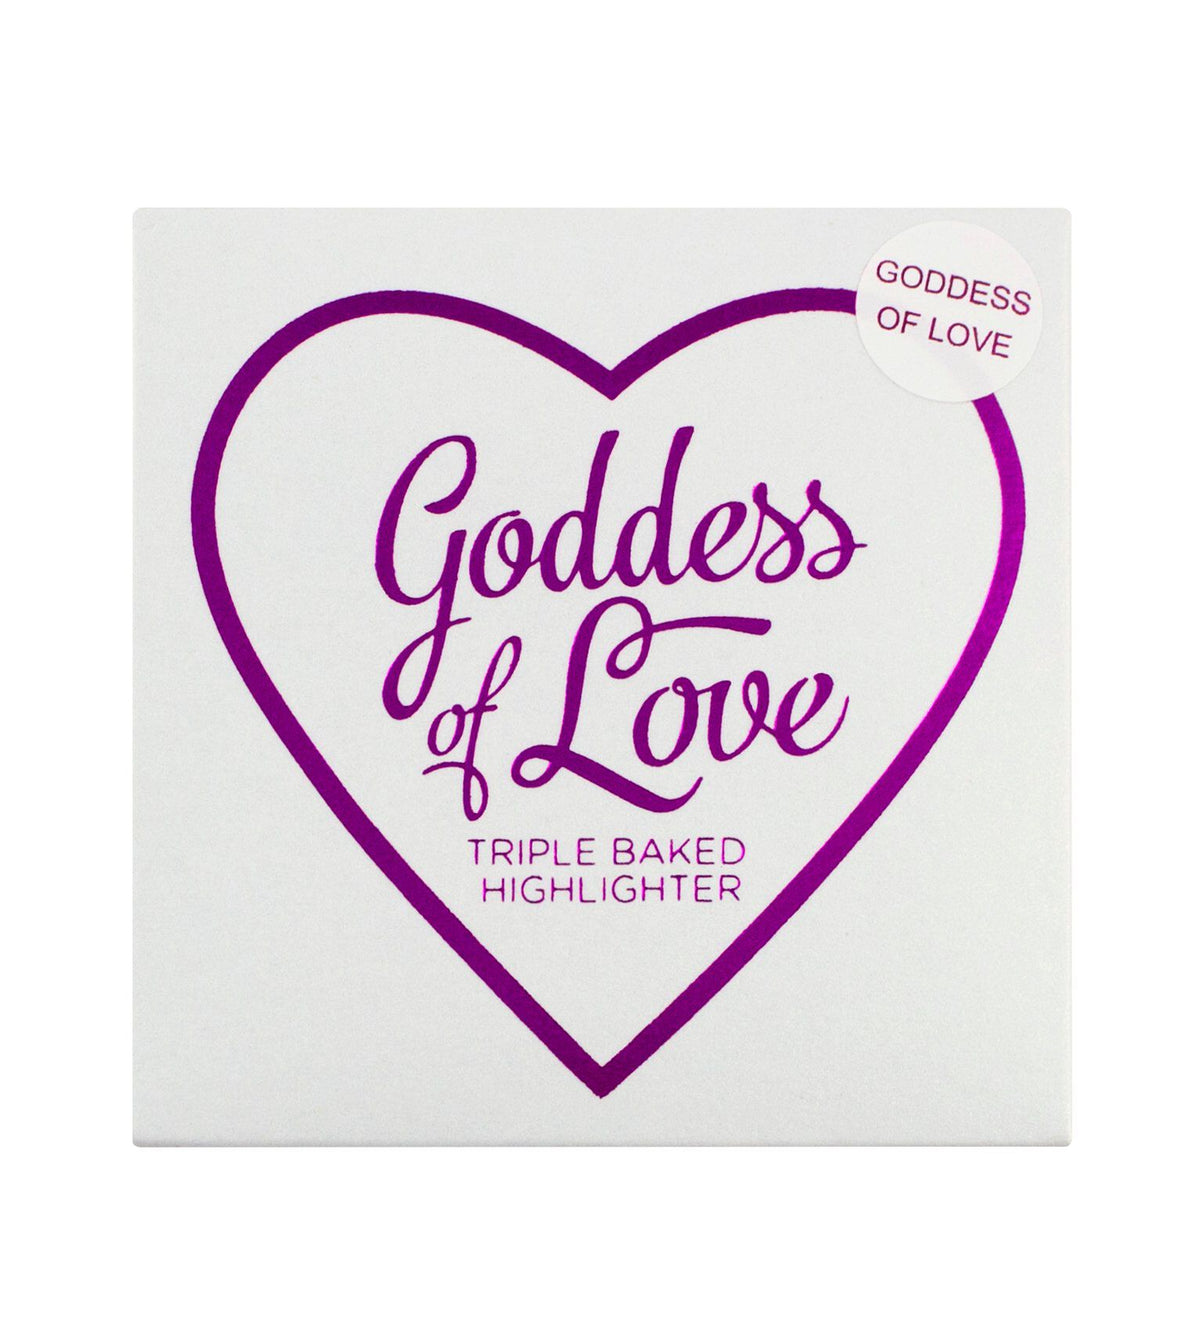 I Heart Revolution - Goddess of Love Highlighter